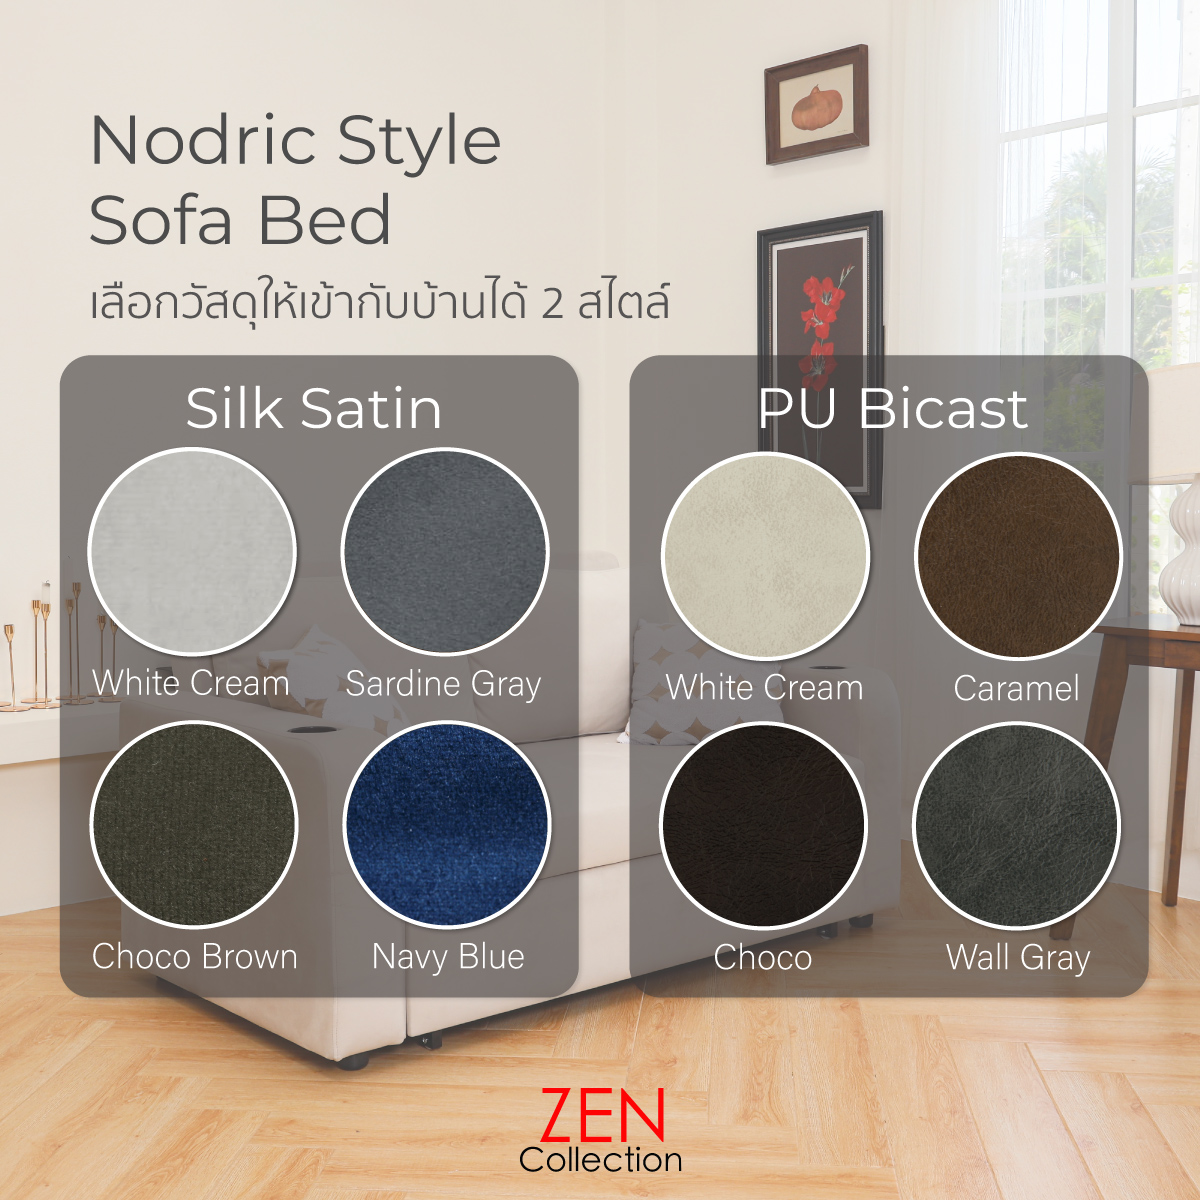 โซฟา ZEN Collection เบ้ด ปรับนอน ขนาด 1.65 m. EDDY Nordic Sofa Bed ปรับนอนได้ 2 ระดับ